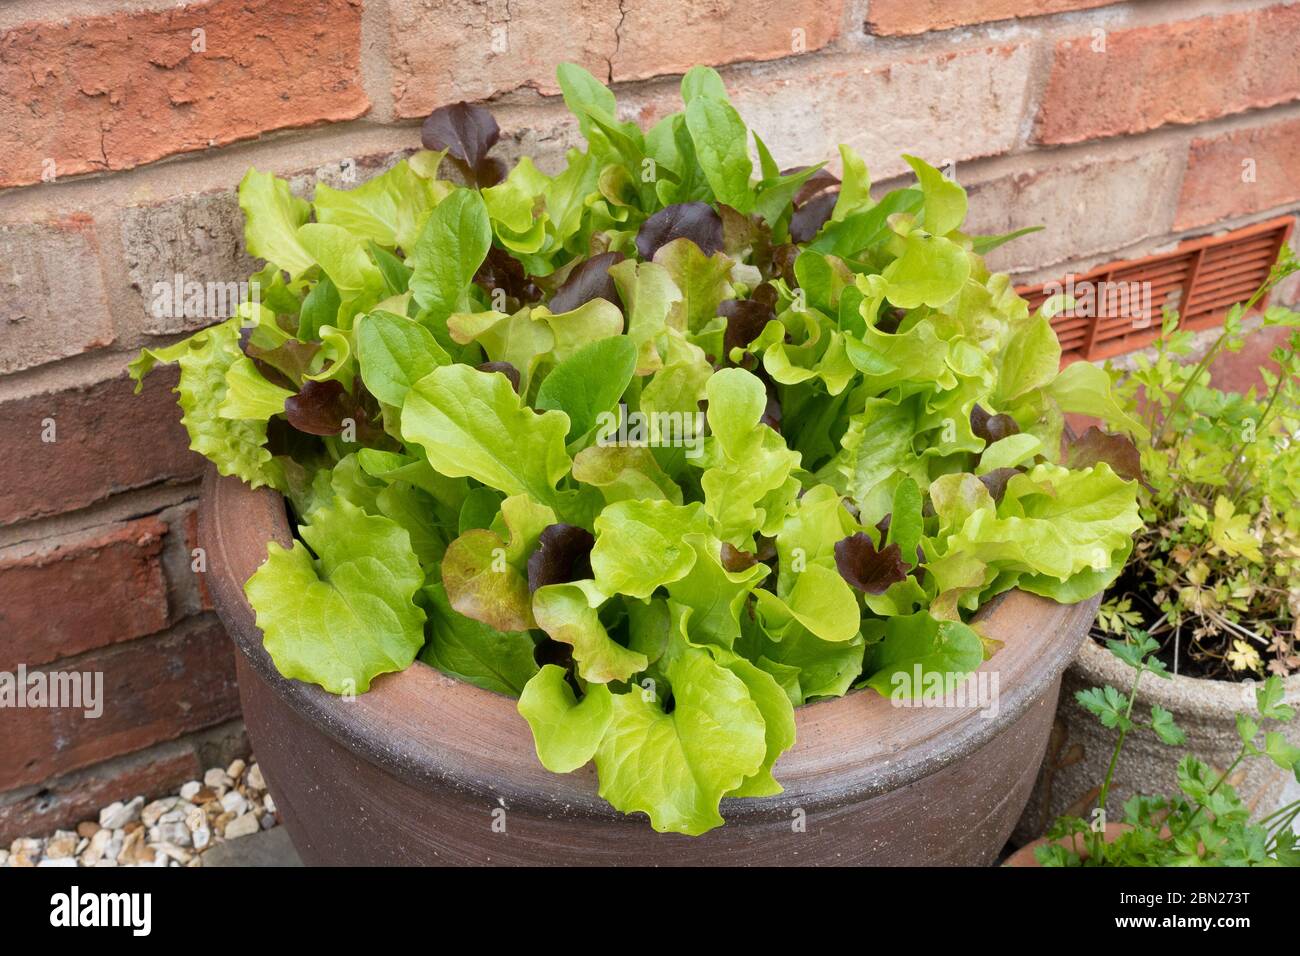 Des feuilles de salade mélangées poussent dans des pots extérieurs, car le blocage du coronavirus favorise l'autosuffisance pendant la pandémie Covid-19, Angleterre, Royaume-Uni, mai 2020. Banque D'Images